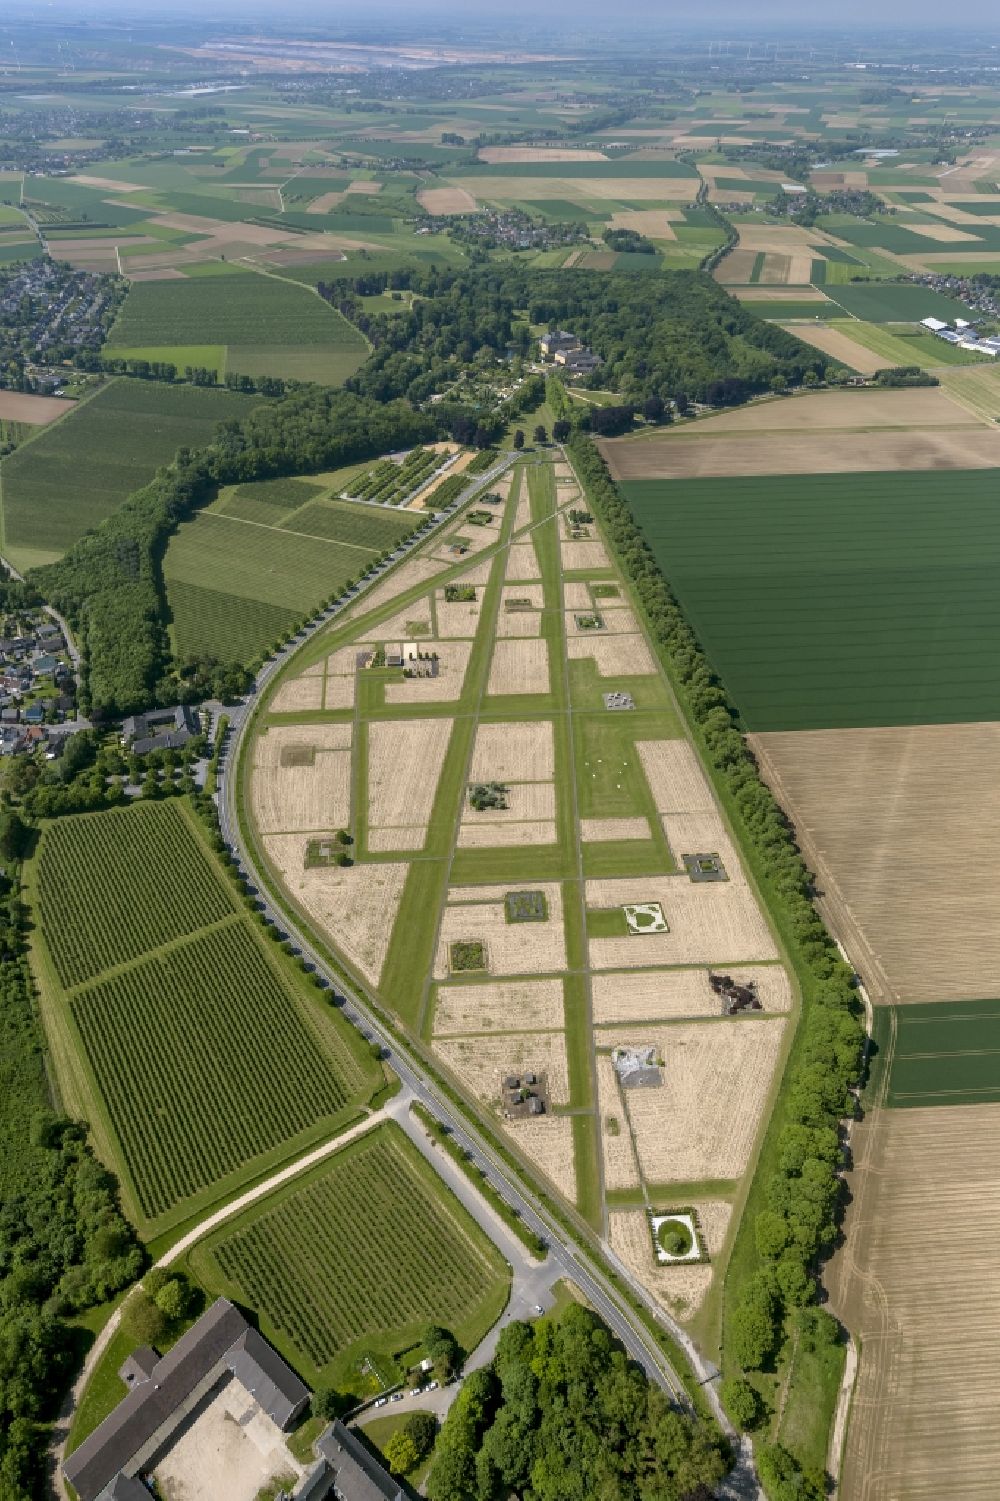 Luftaufnahme Jüchen - Gelände von Schloss Dyck in Jüchen in Nordrhein-Westfalen